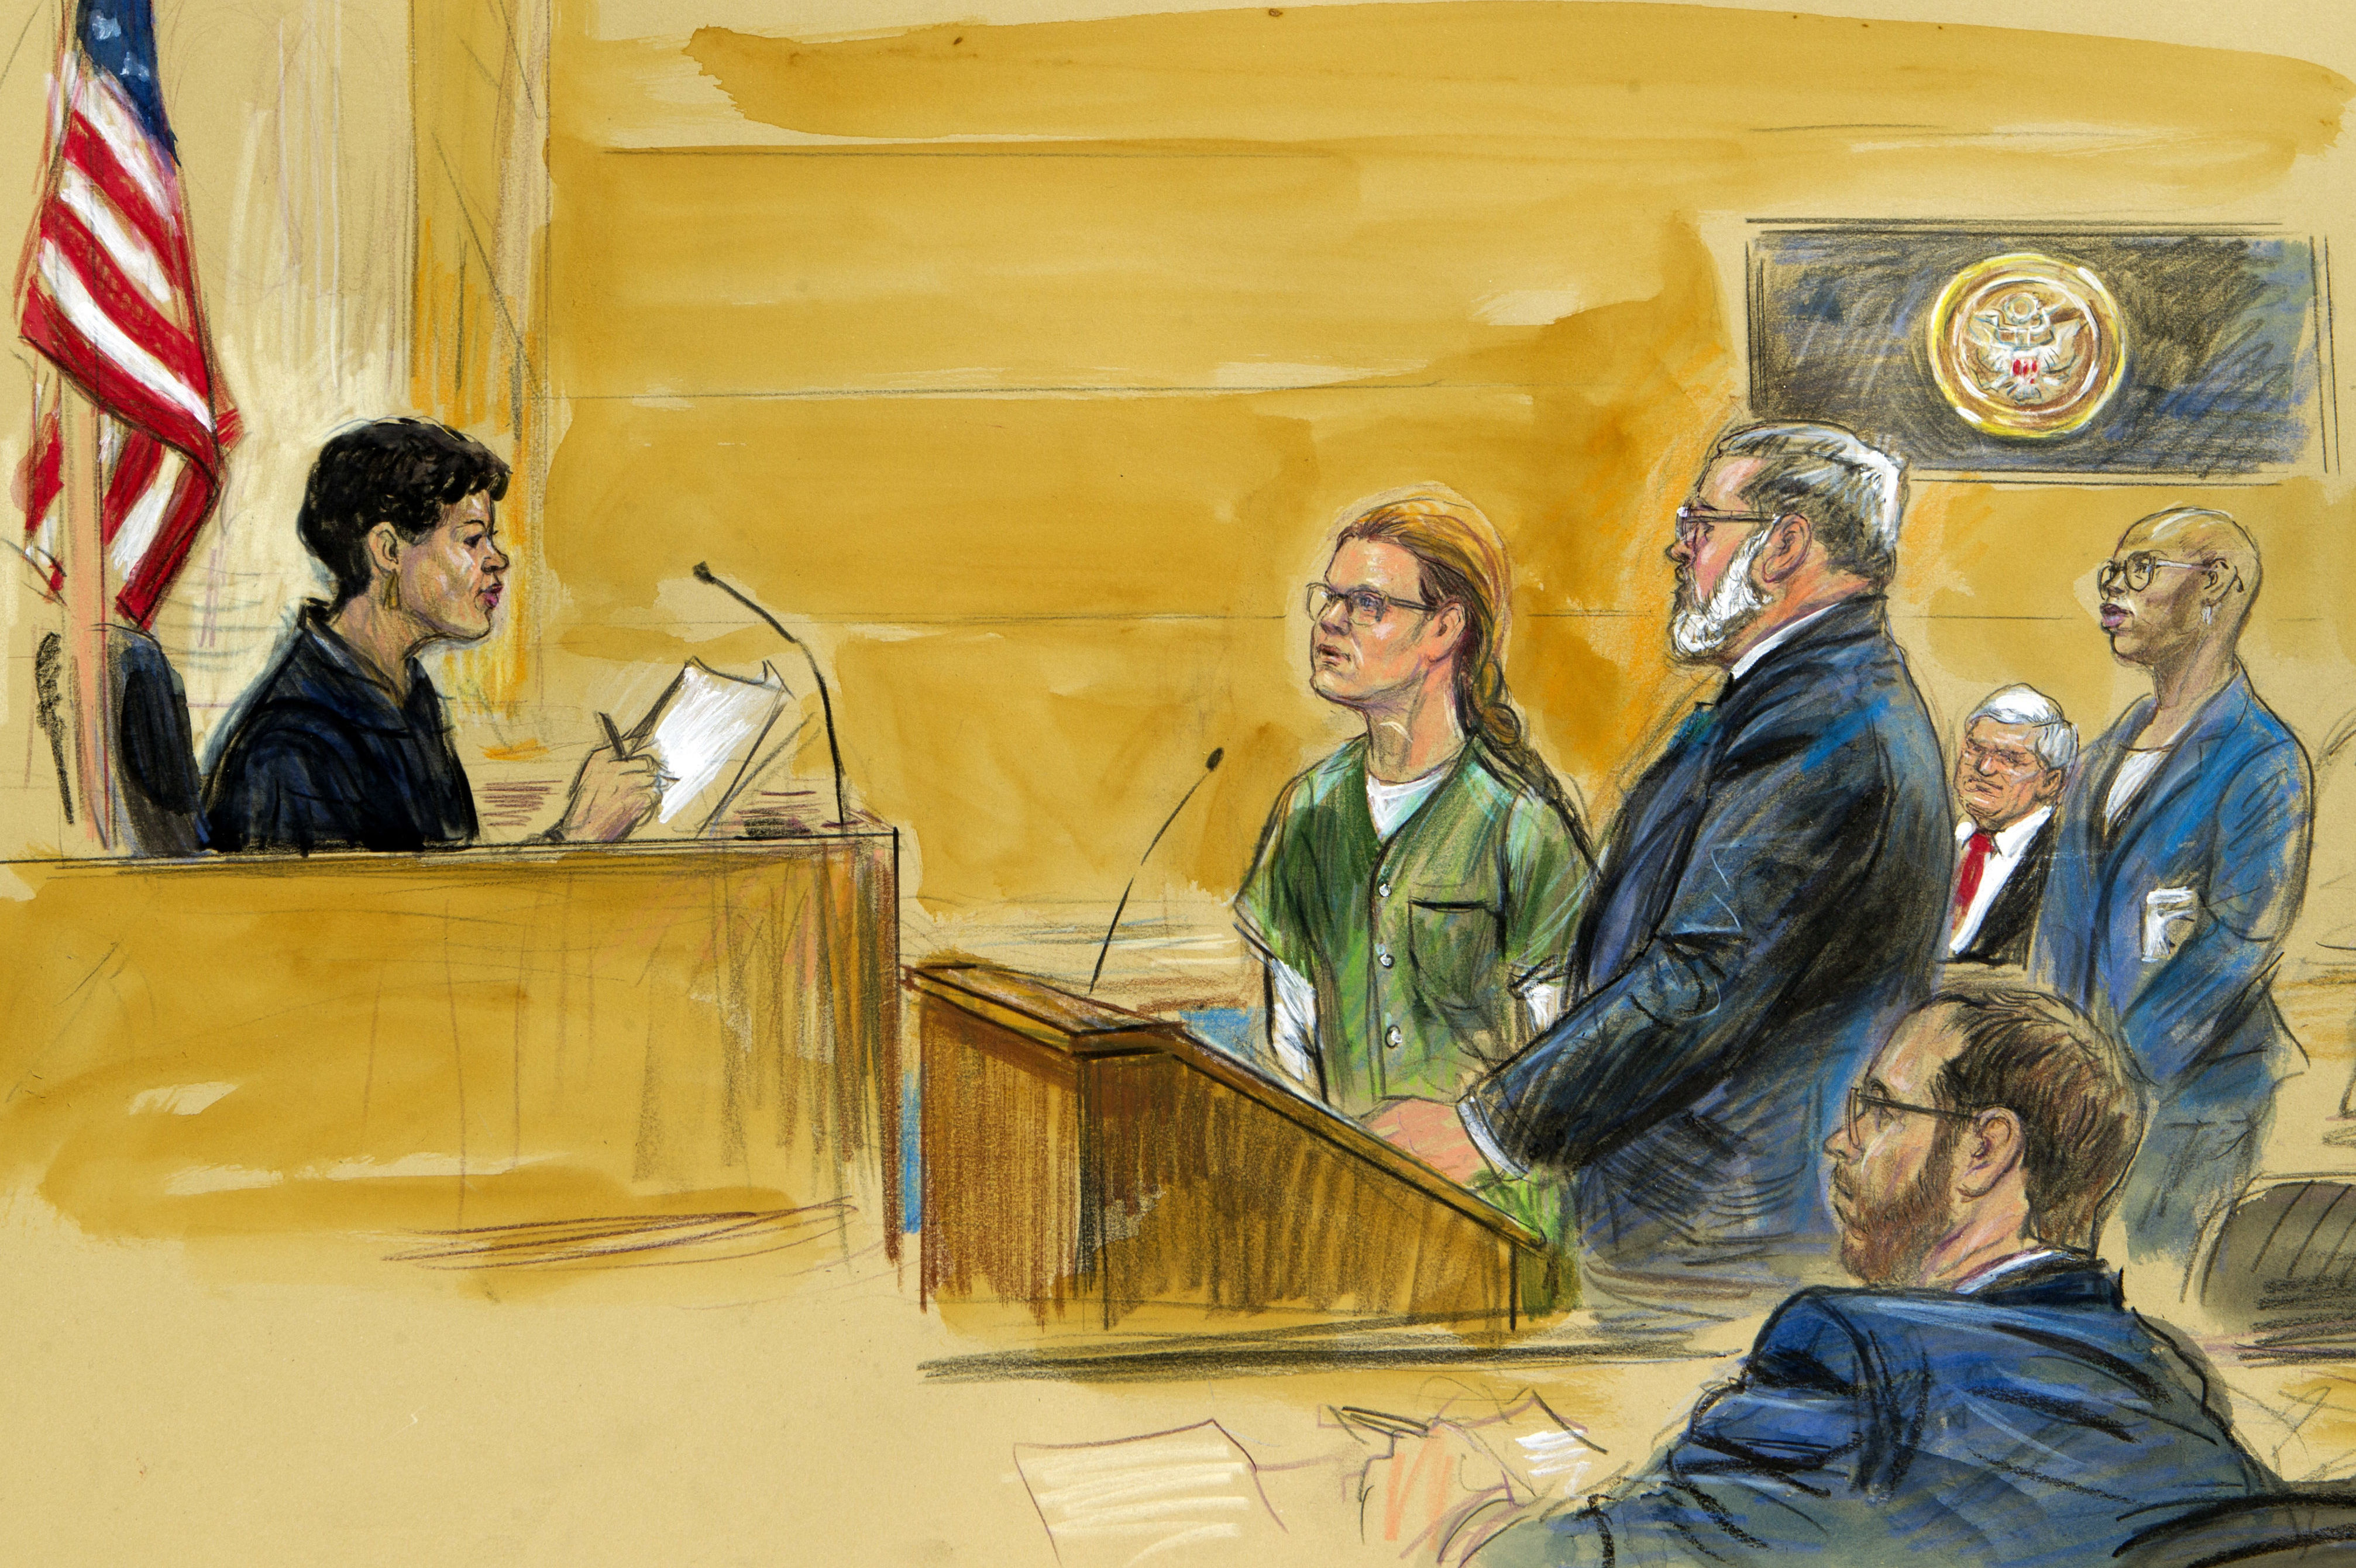 Мария Бутина (слева) со своим адвокатом Робертом Дрисколлом перед окружным судьей США Таней Чуткан во время судебного слушания в окружном суде США в Вашингтоне, 13 декабря 2018 года